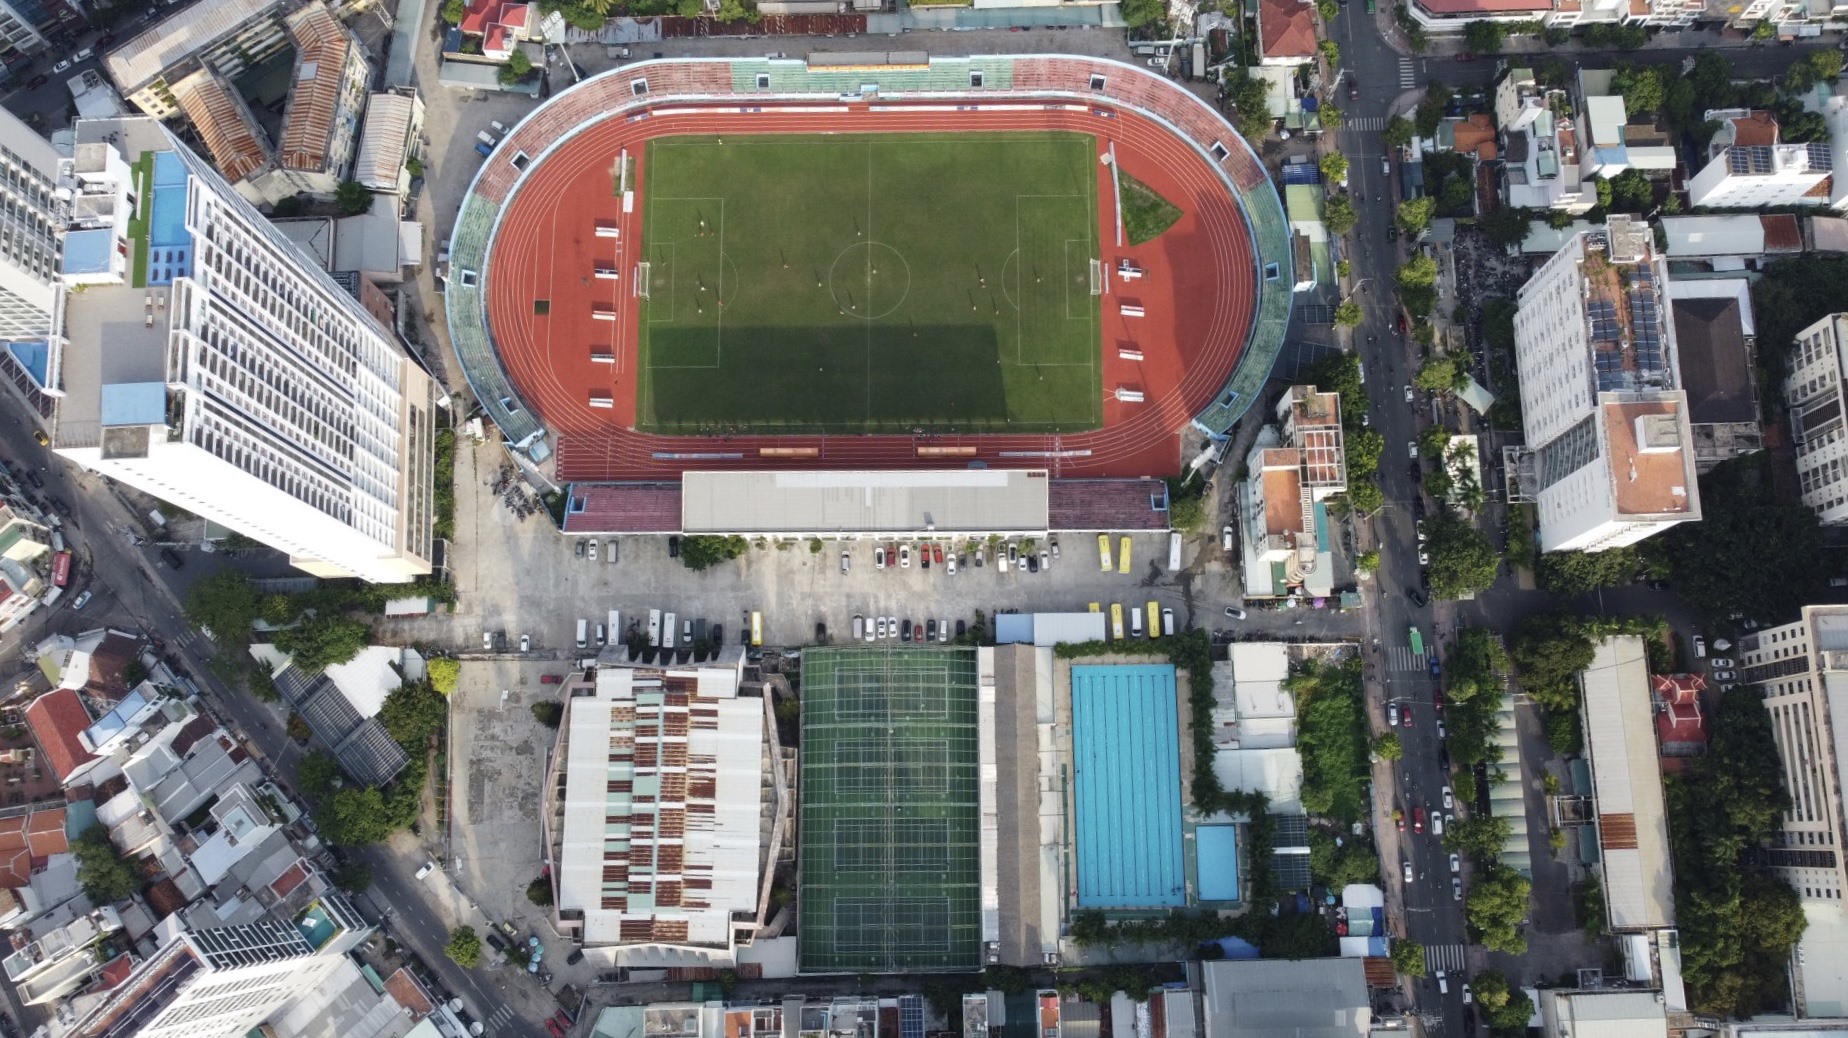 Sân vận động 19 Tháng 8 Nha Trang nhìn từ trên cao. Ảnh: Lê Xuân